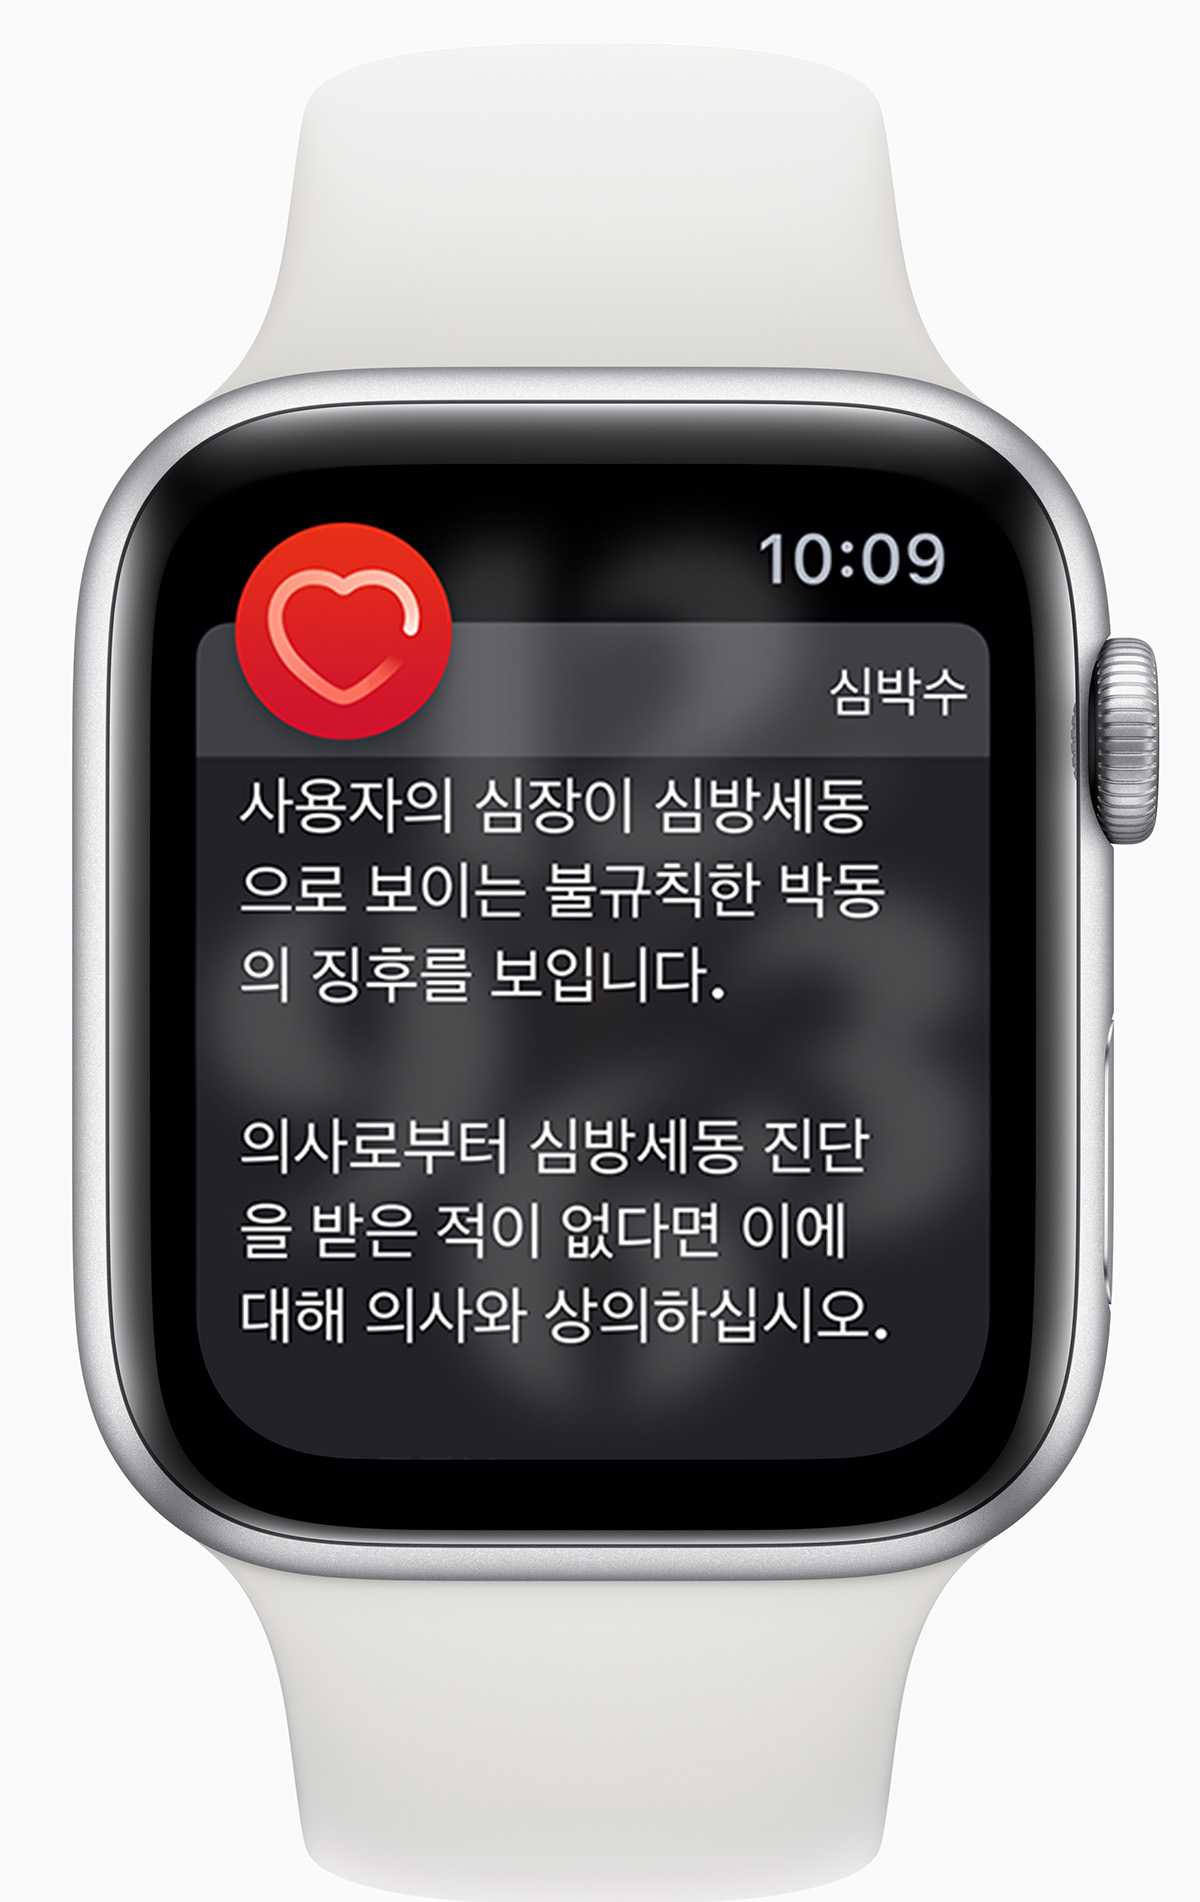 韓國 Apple Watch 將開放心電圖和心律不整通知功能 | ECG | iPhone News 愛瘋了